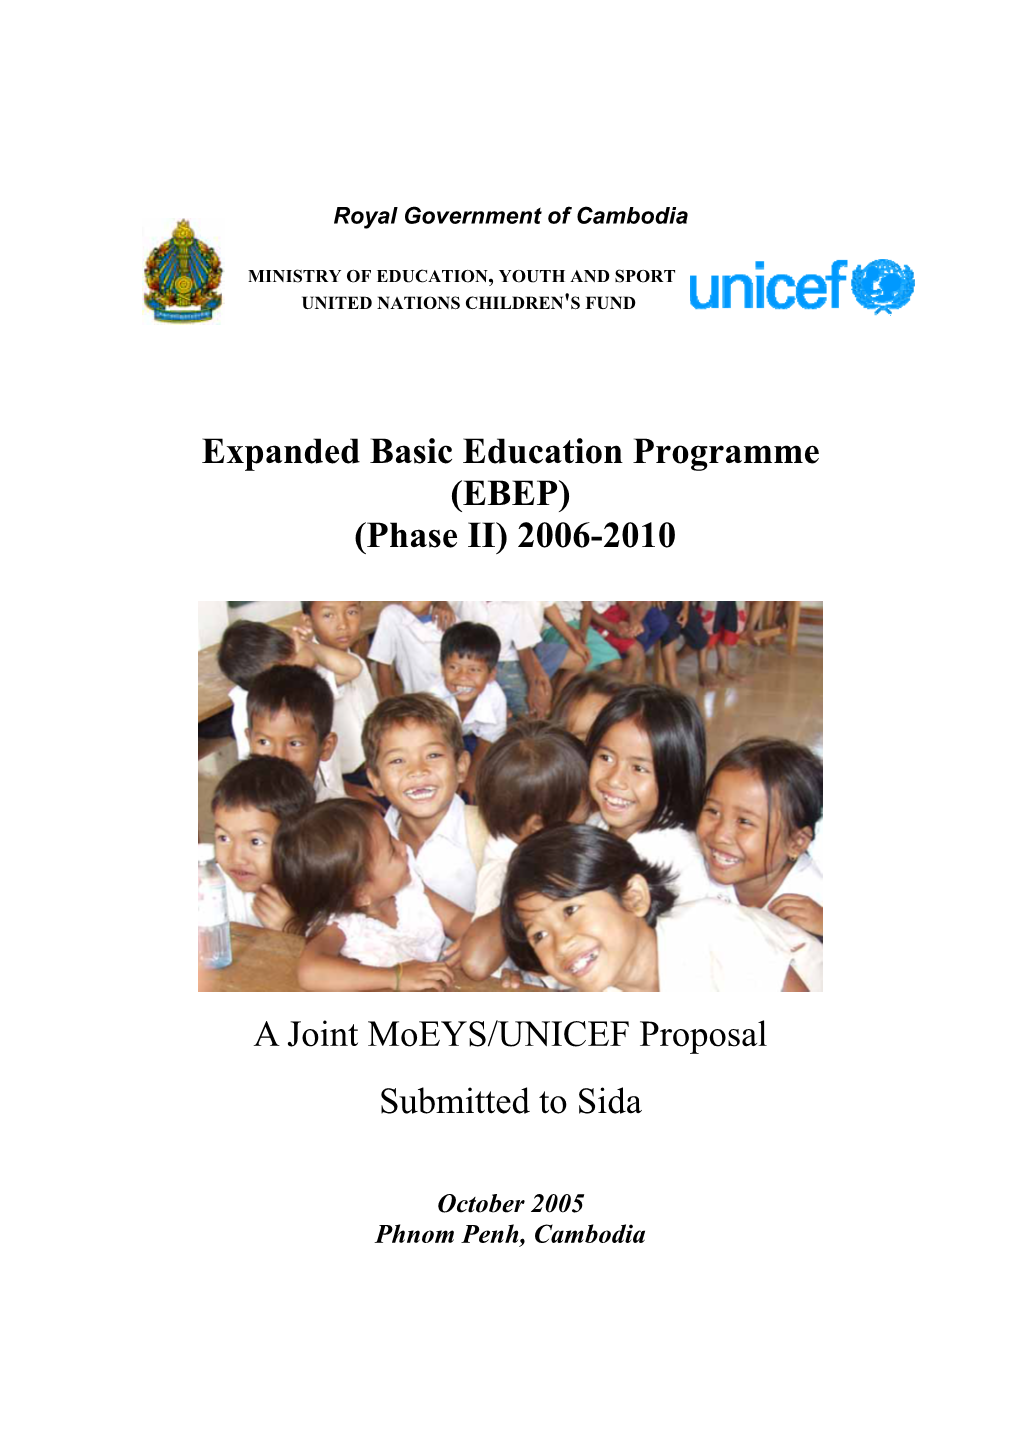 (EBEP) (Phase II) 2006-2010 a Joint Moeys/UNICEF Proposal